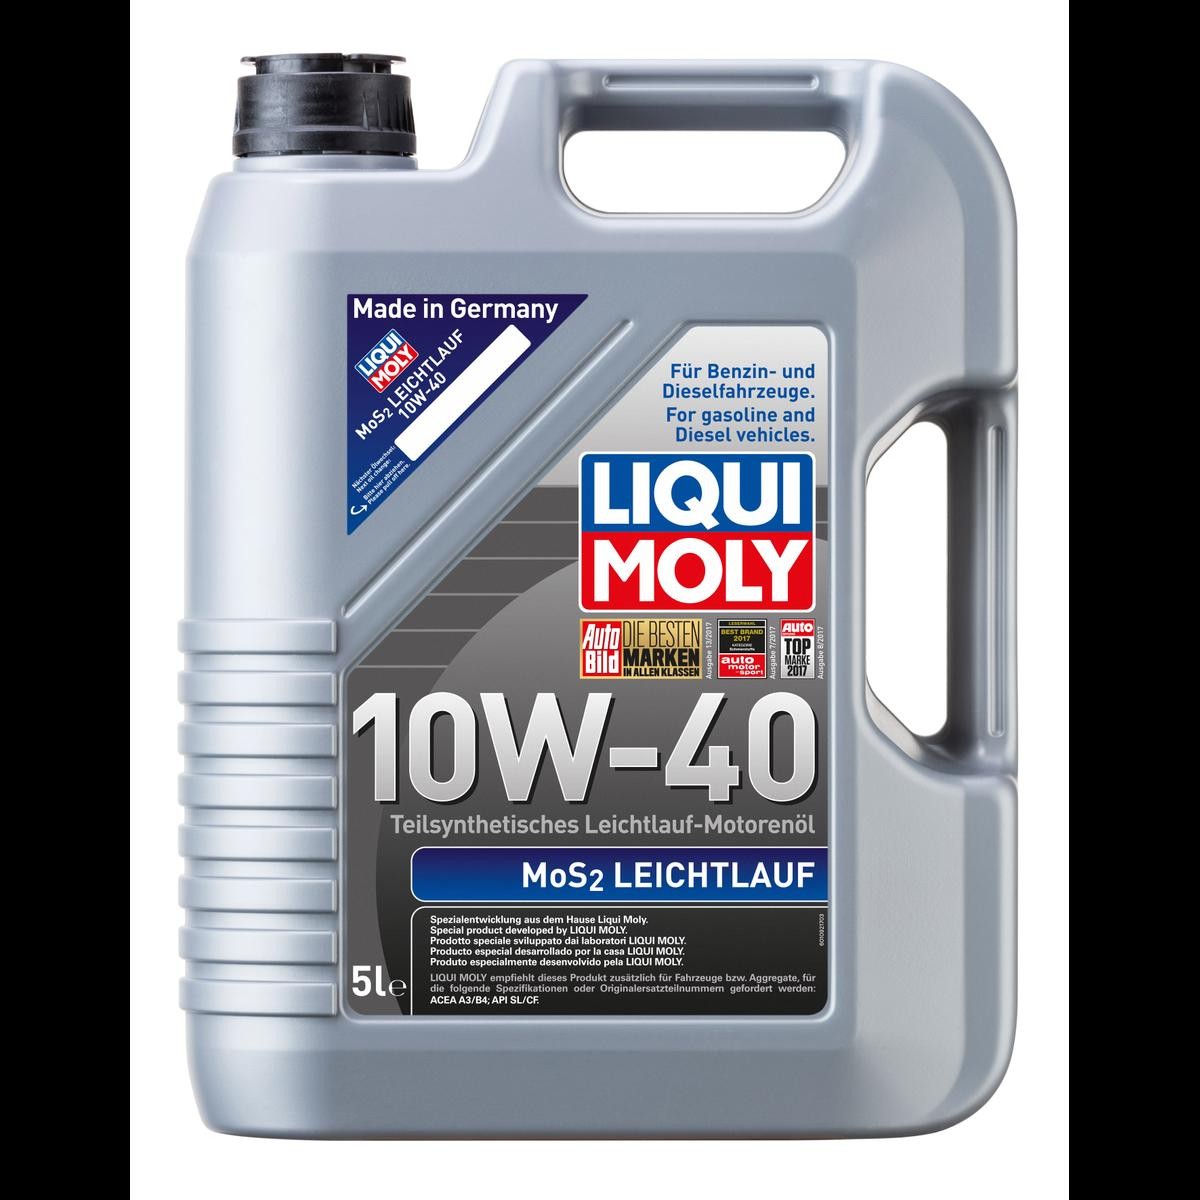 LIQUI MOLY 10W-40, 5l, Teilsynthetiköl - 1092